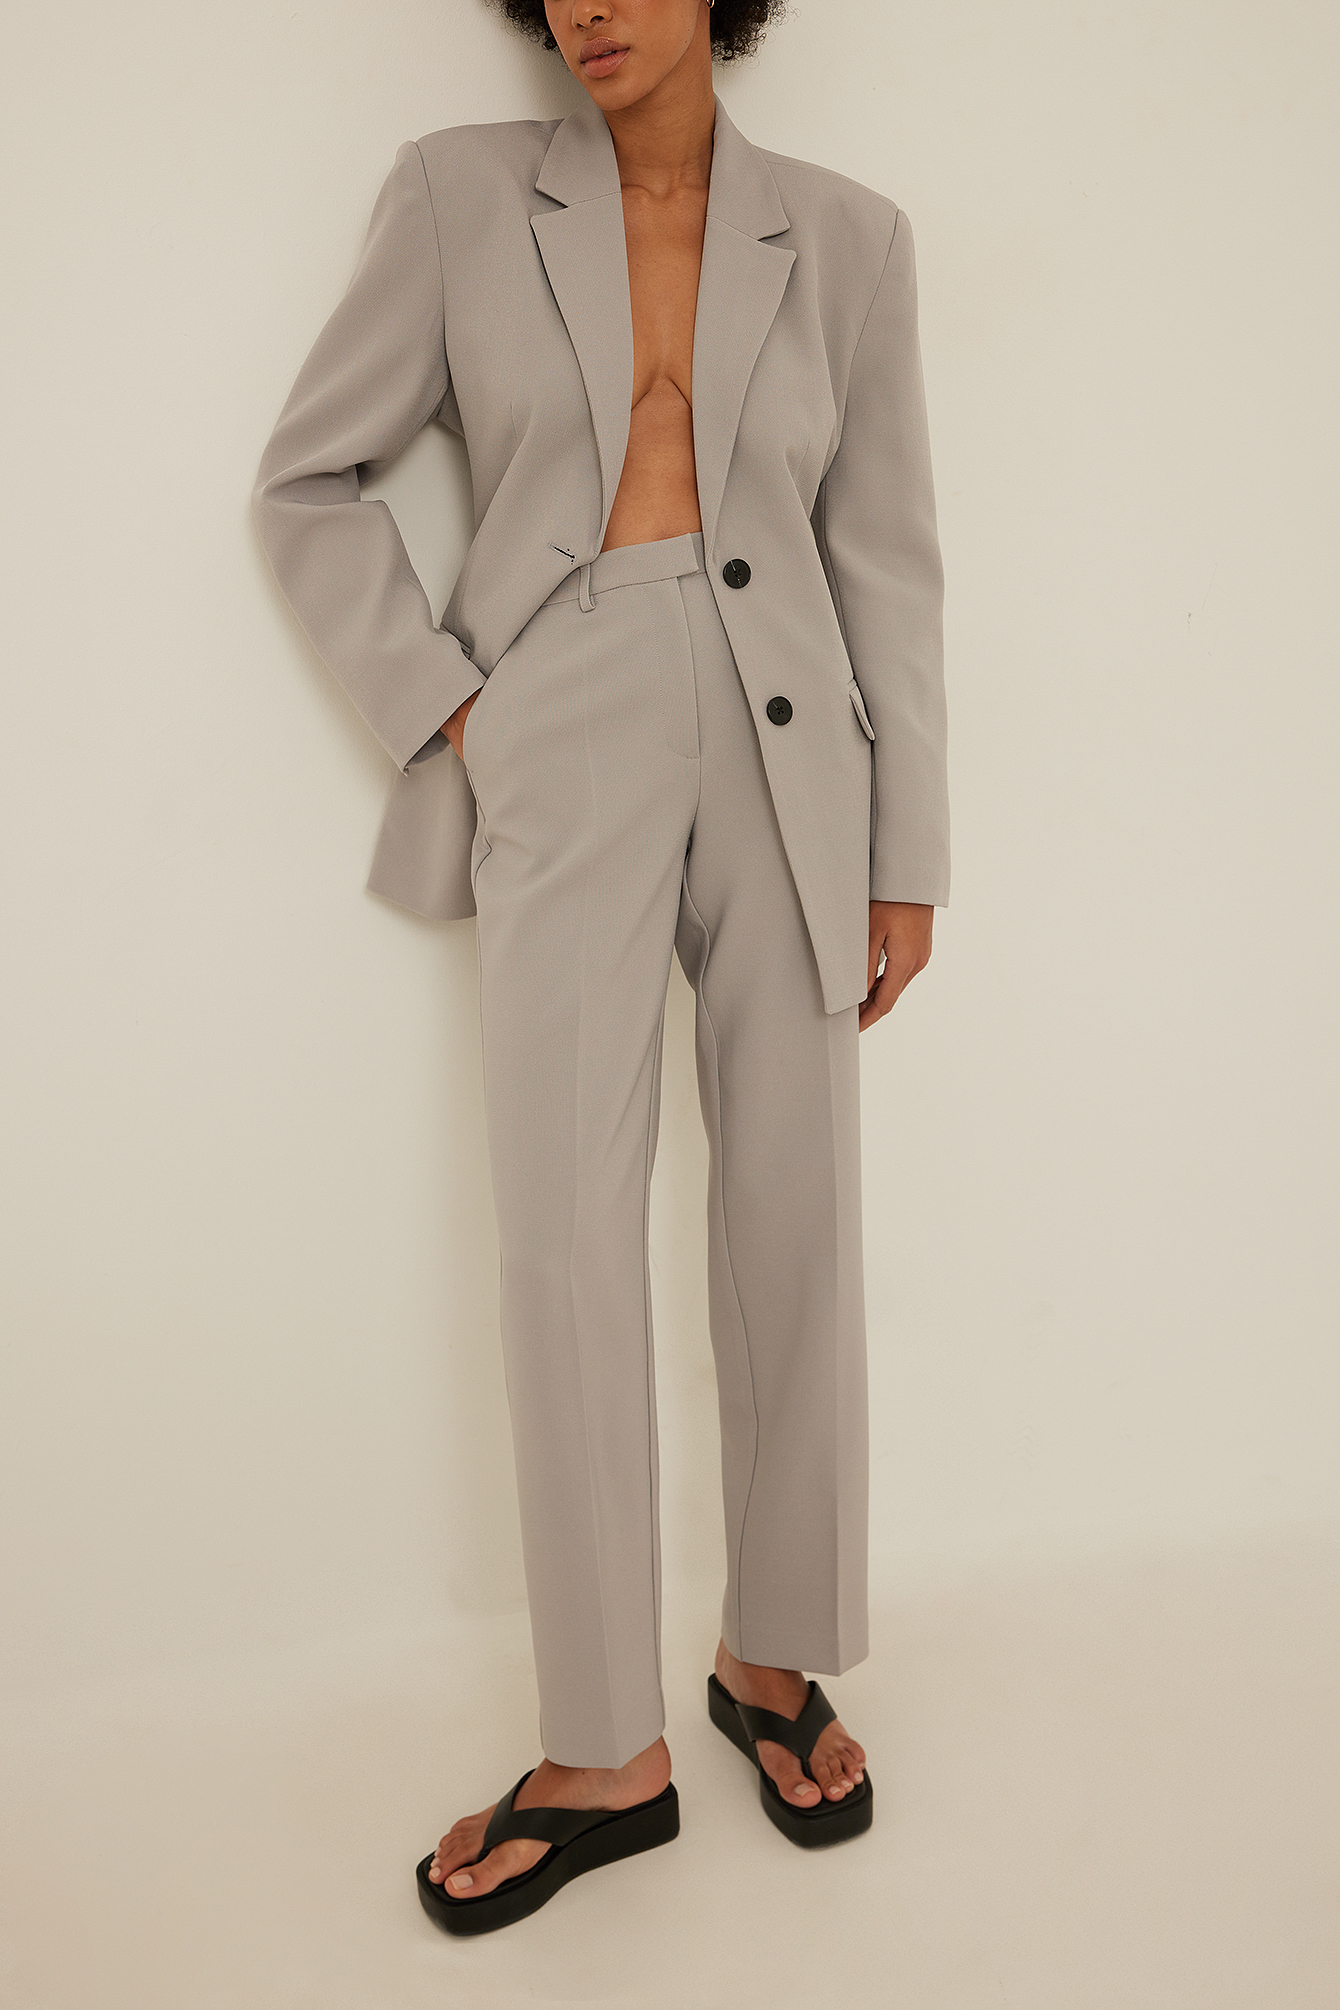 Grey Pantalon de costume droit recyclé